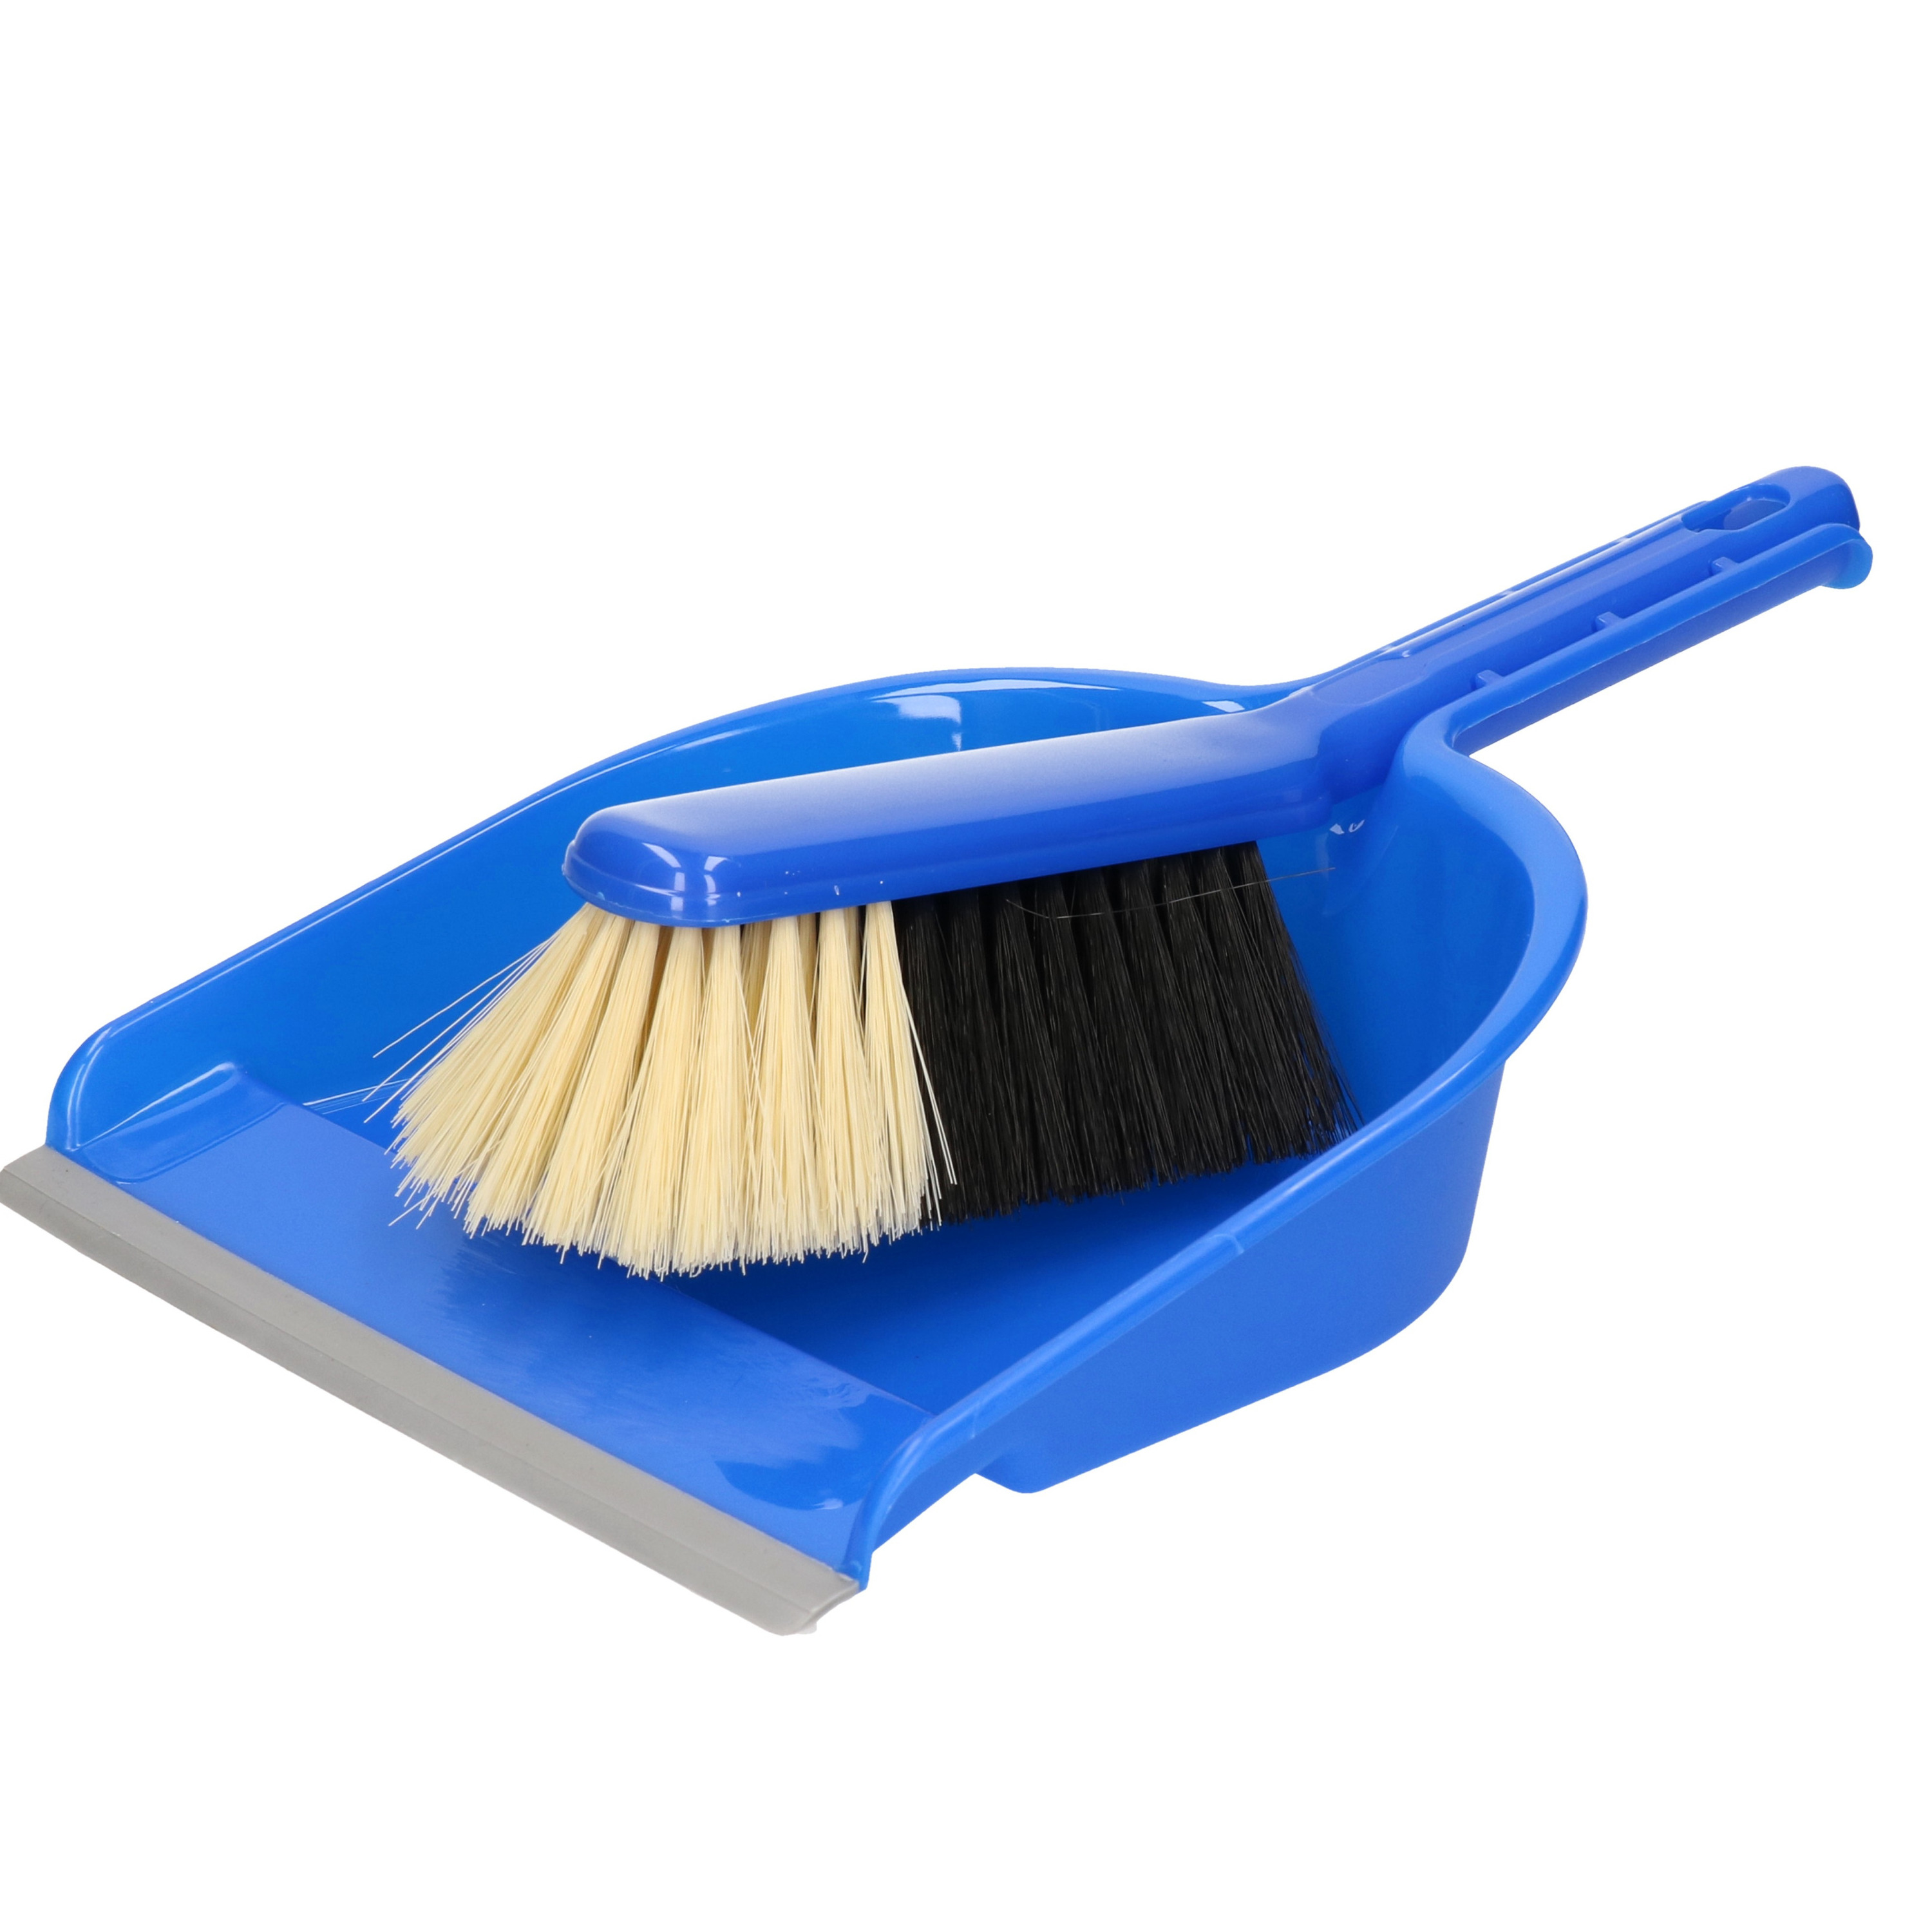 Sorex Stoffer en blik - kunststof - x 23 cm - blauw - met rubber rand -